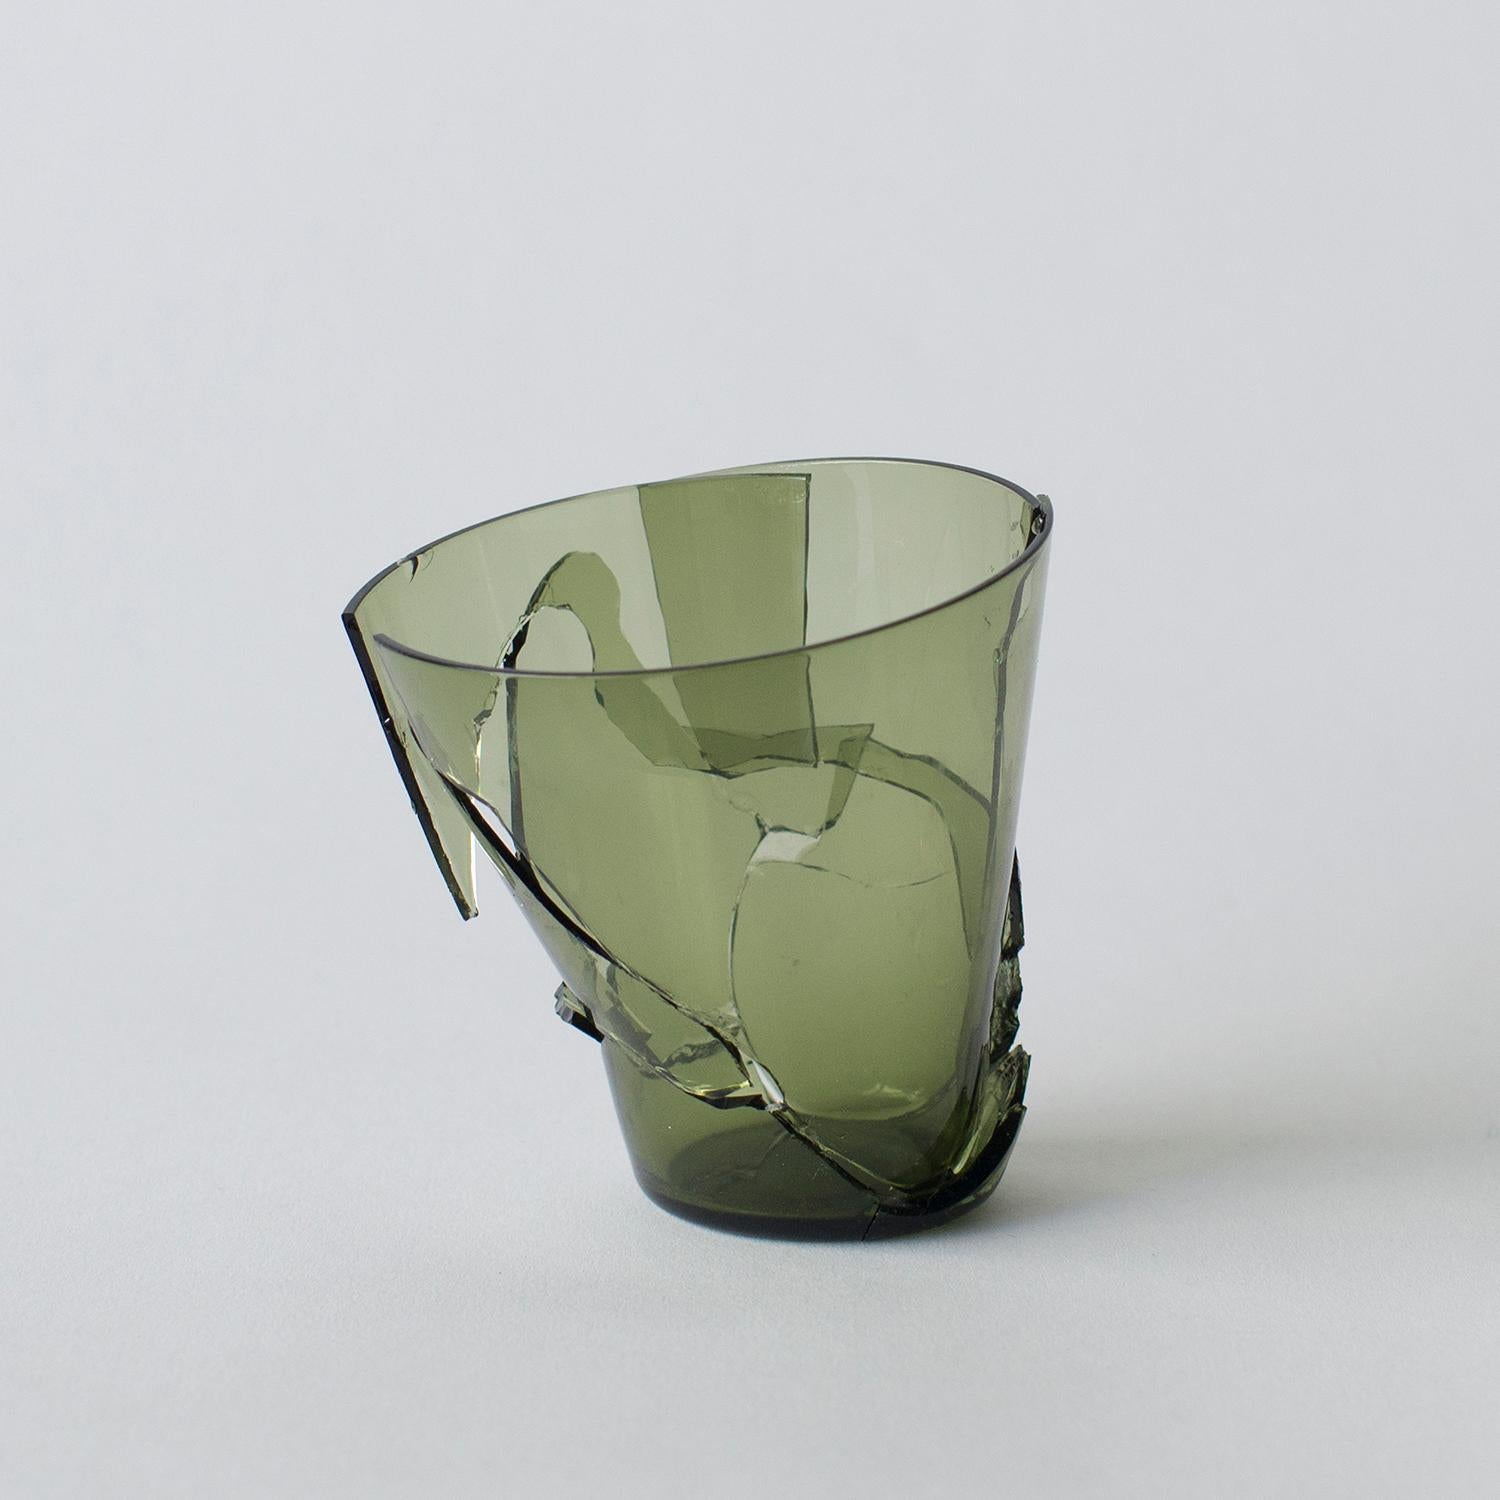 Grün und Blau sind verfügbar. Rot ist verkauft.
Diese Serie besteht aus einigen Glas- und einigen Keramikarbeiten. Diese Werke sind in Form und Aussehen einzigartig. Norihiko Terayama schuf sie aus beschädigten Vasen, Kaffeetassen und so weiter. Er